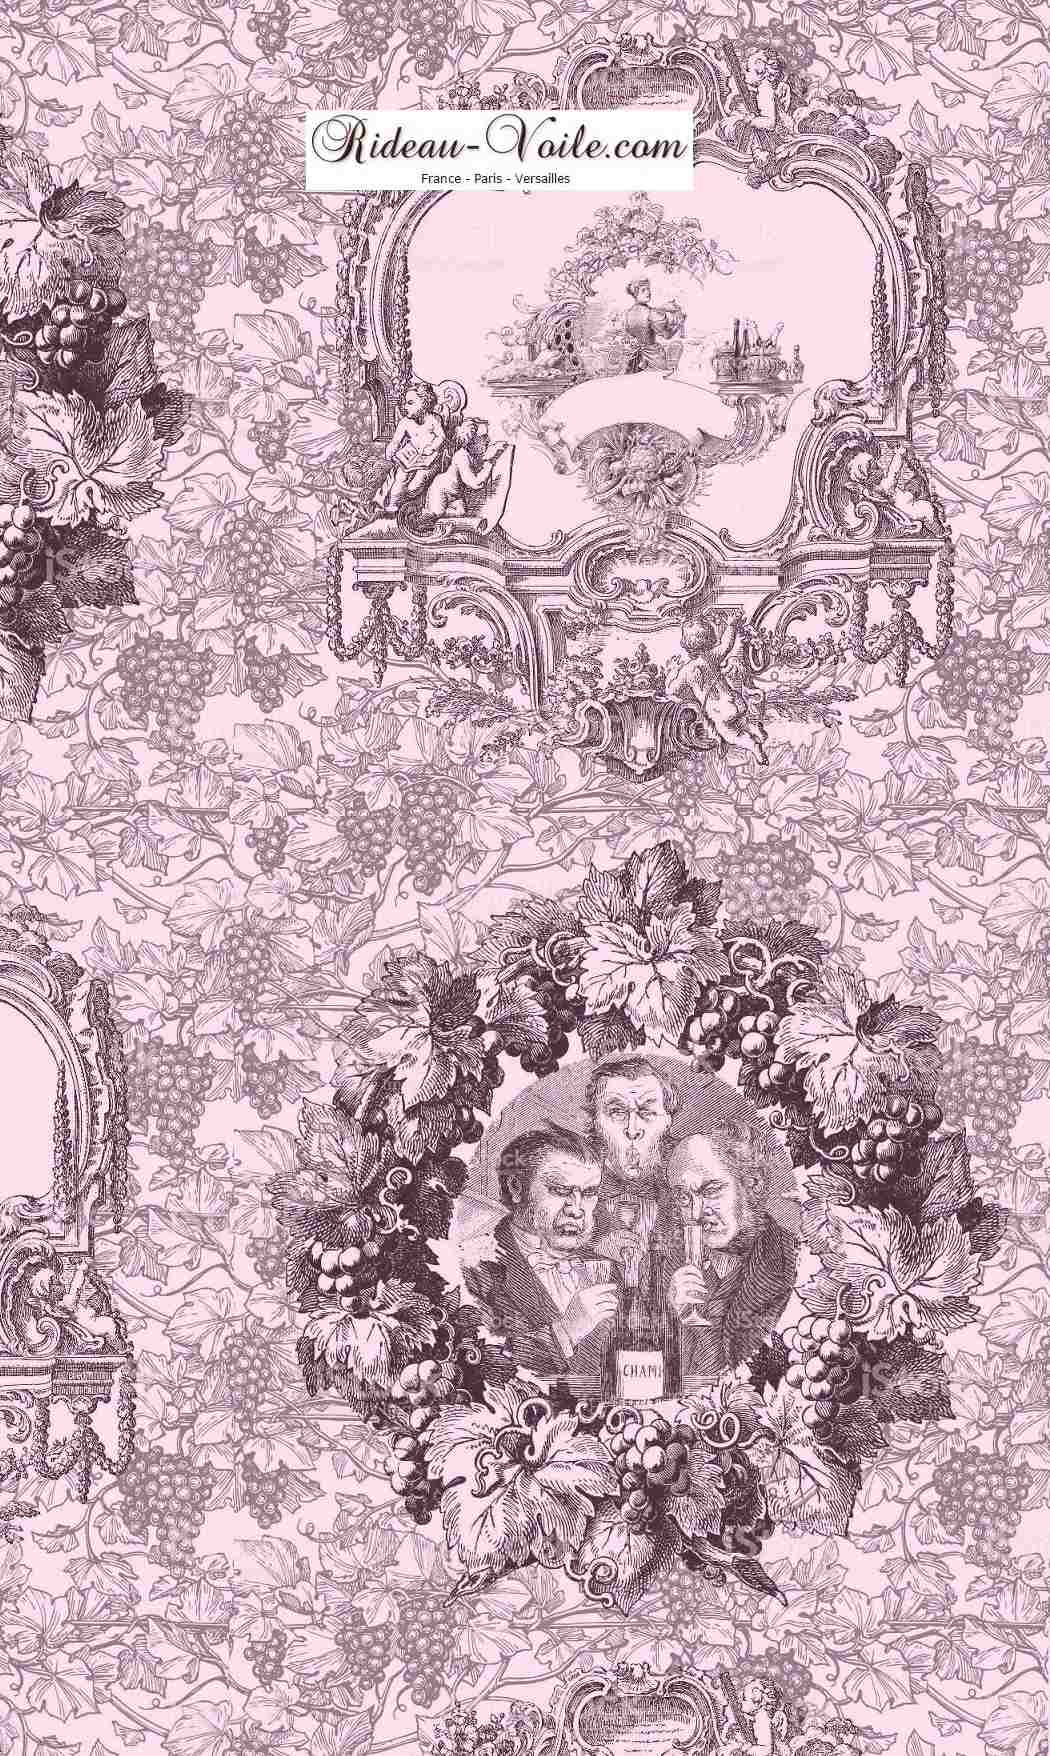 Tissu imprimé rose Toile de Jouy Tissu au mètre comment acheter trouver boutique Paris toile de jouy  pour décoration, agencement,  haut gamme sur mesure. Papier peint, luminaire, abat-jour, rideau, couette et coussin. ignifugé, occultant, Versailles, Nice, Monaco.